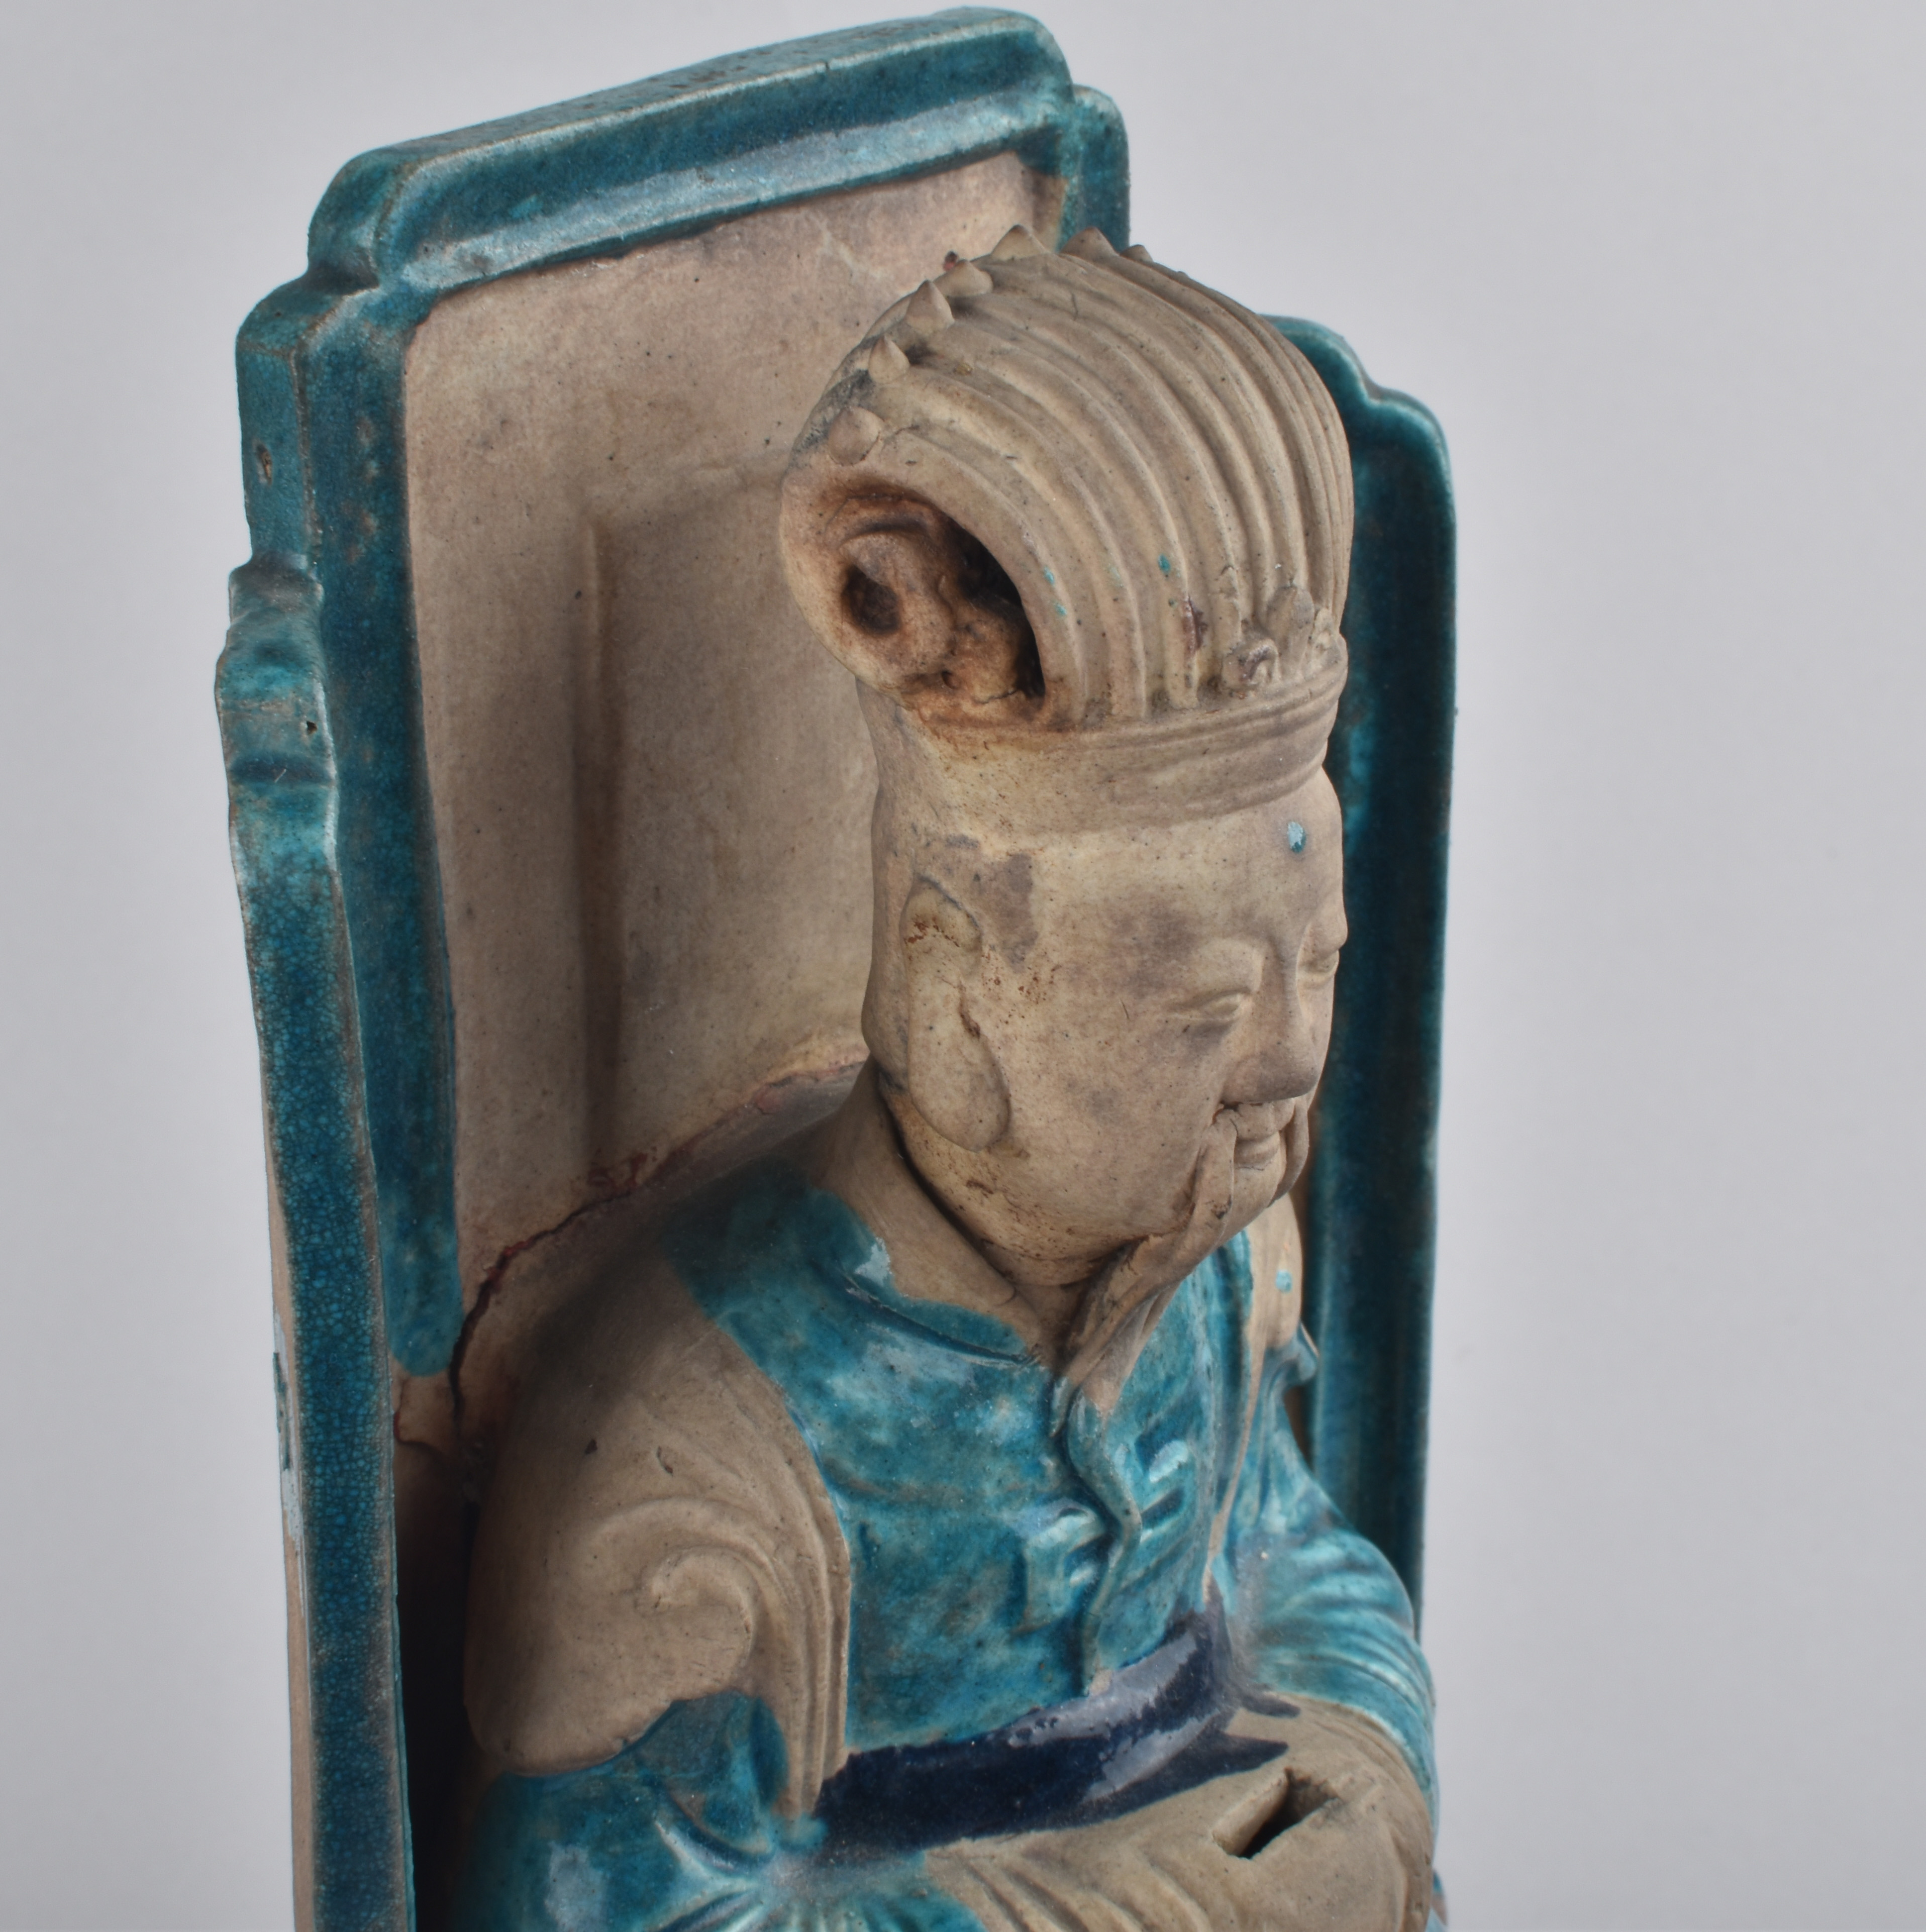 Porcelaine (biscuit) Ming Dynasty (1368-1644), fin du XVIe siècle, début du XVIIe siècle, Chine